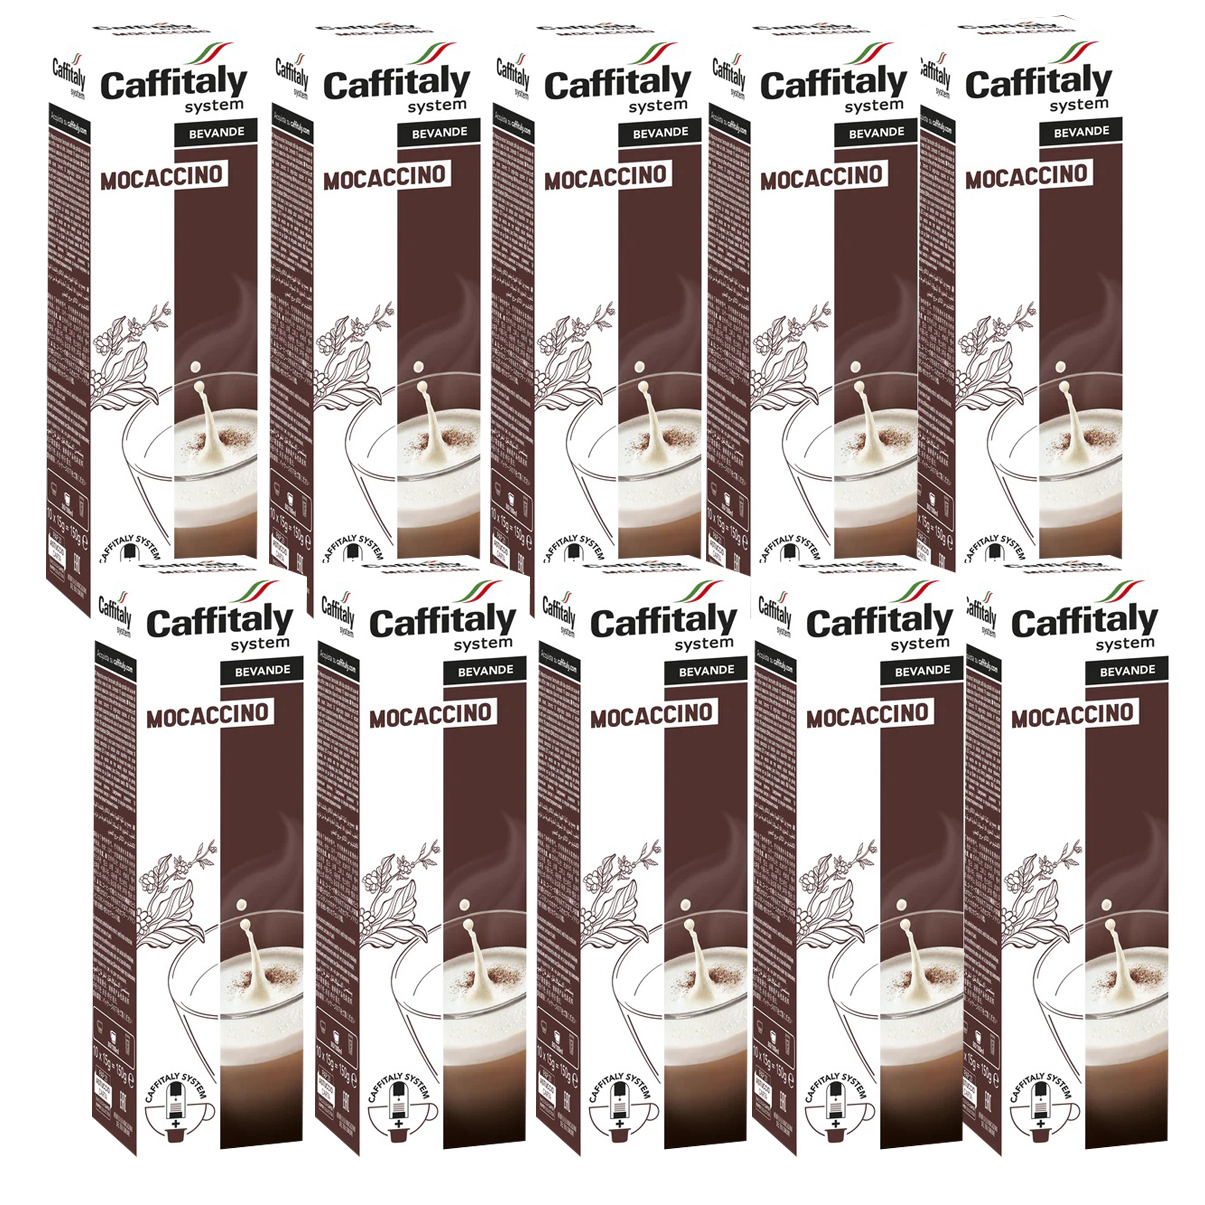 100 Capsule Caffitaly System E'Caffe' Mocaccino offerte online al miglior  prezzo